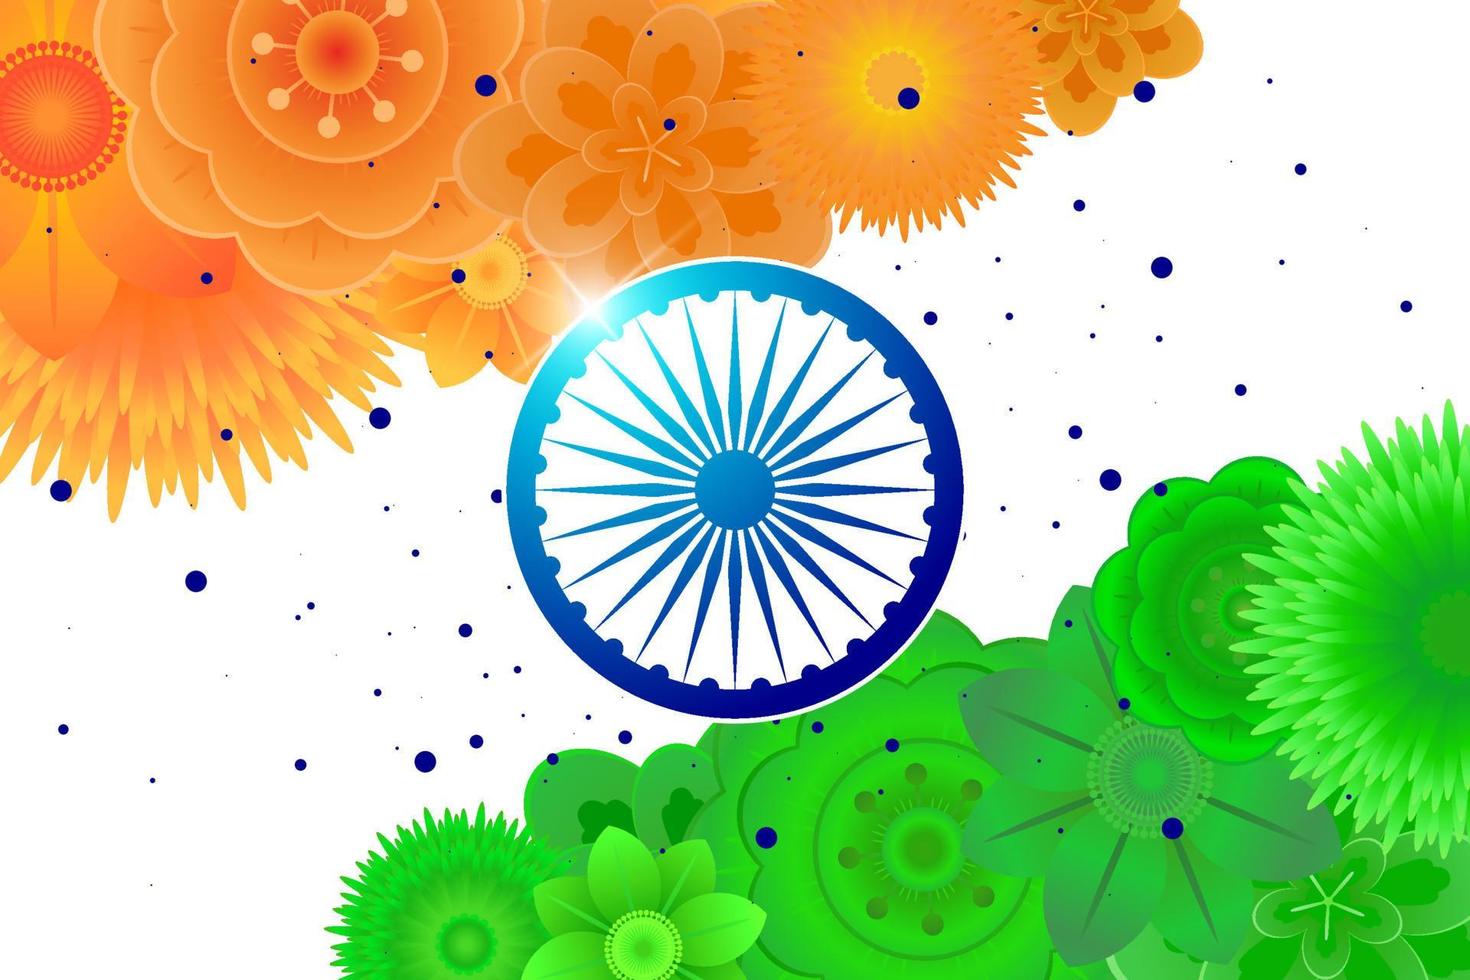 indische onafhankelijkheid 15 augustus of republiek dag 26 januari banner. india land nationale feestdag horizontale flyer. vieringsposter van bloemen in vlagkleuren met wielsymbool. vector illustratie